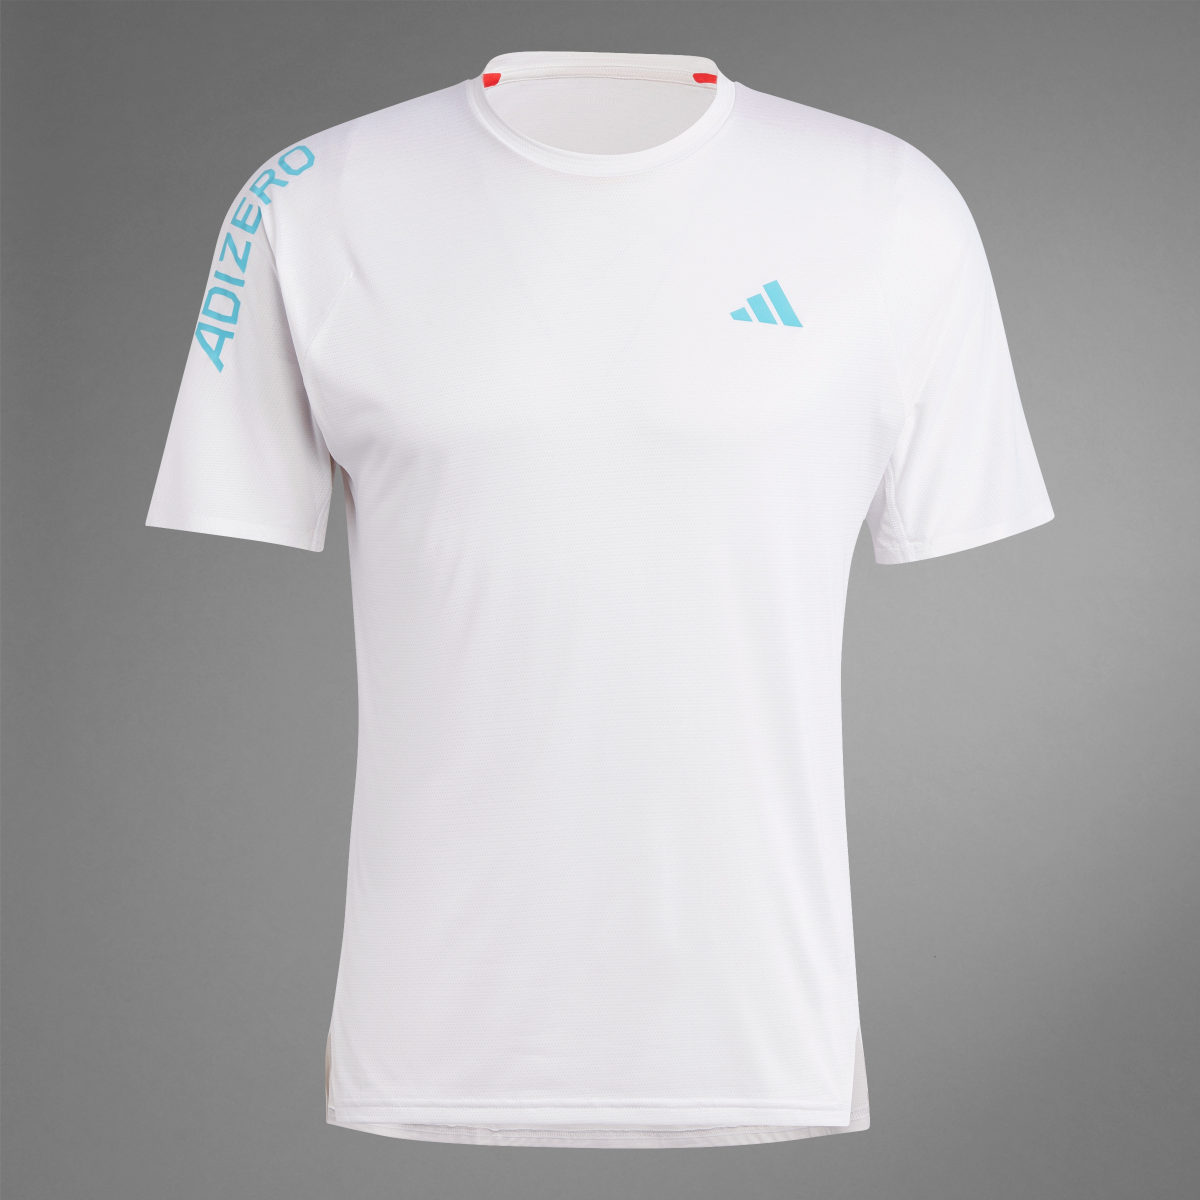 Adidas Adizero Running T-Shirt. 9